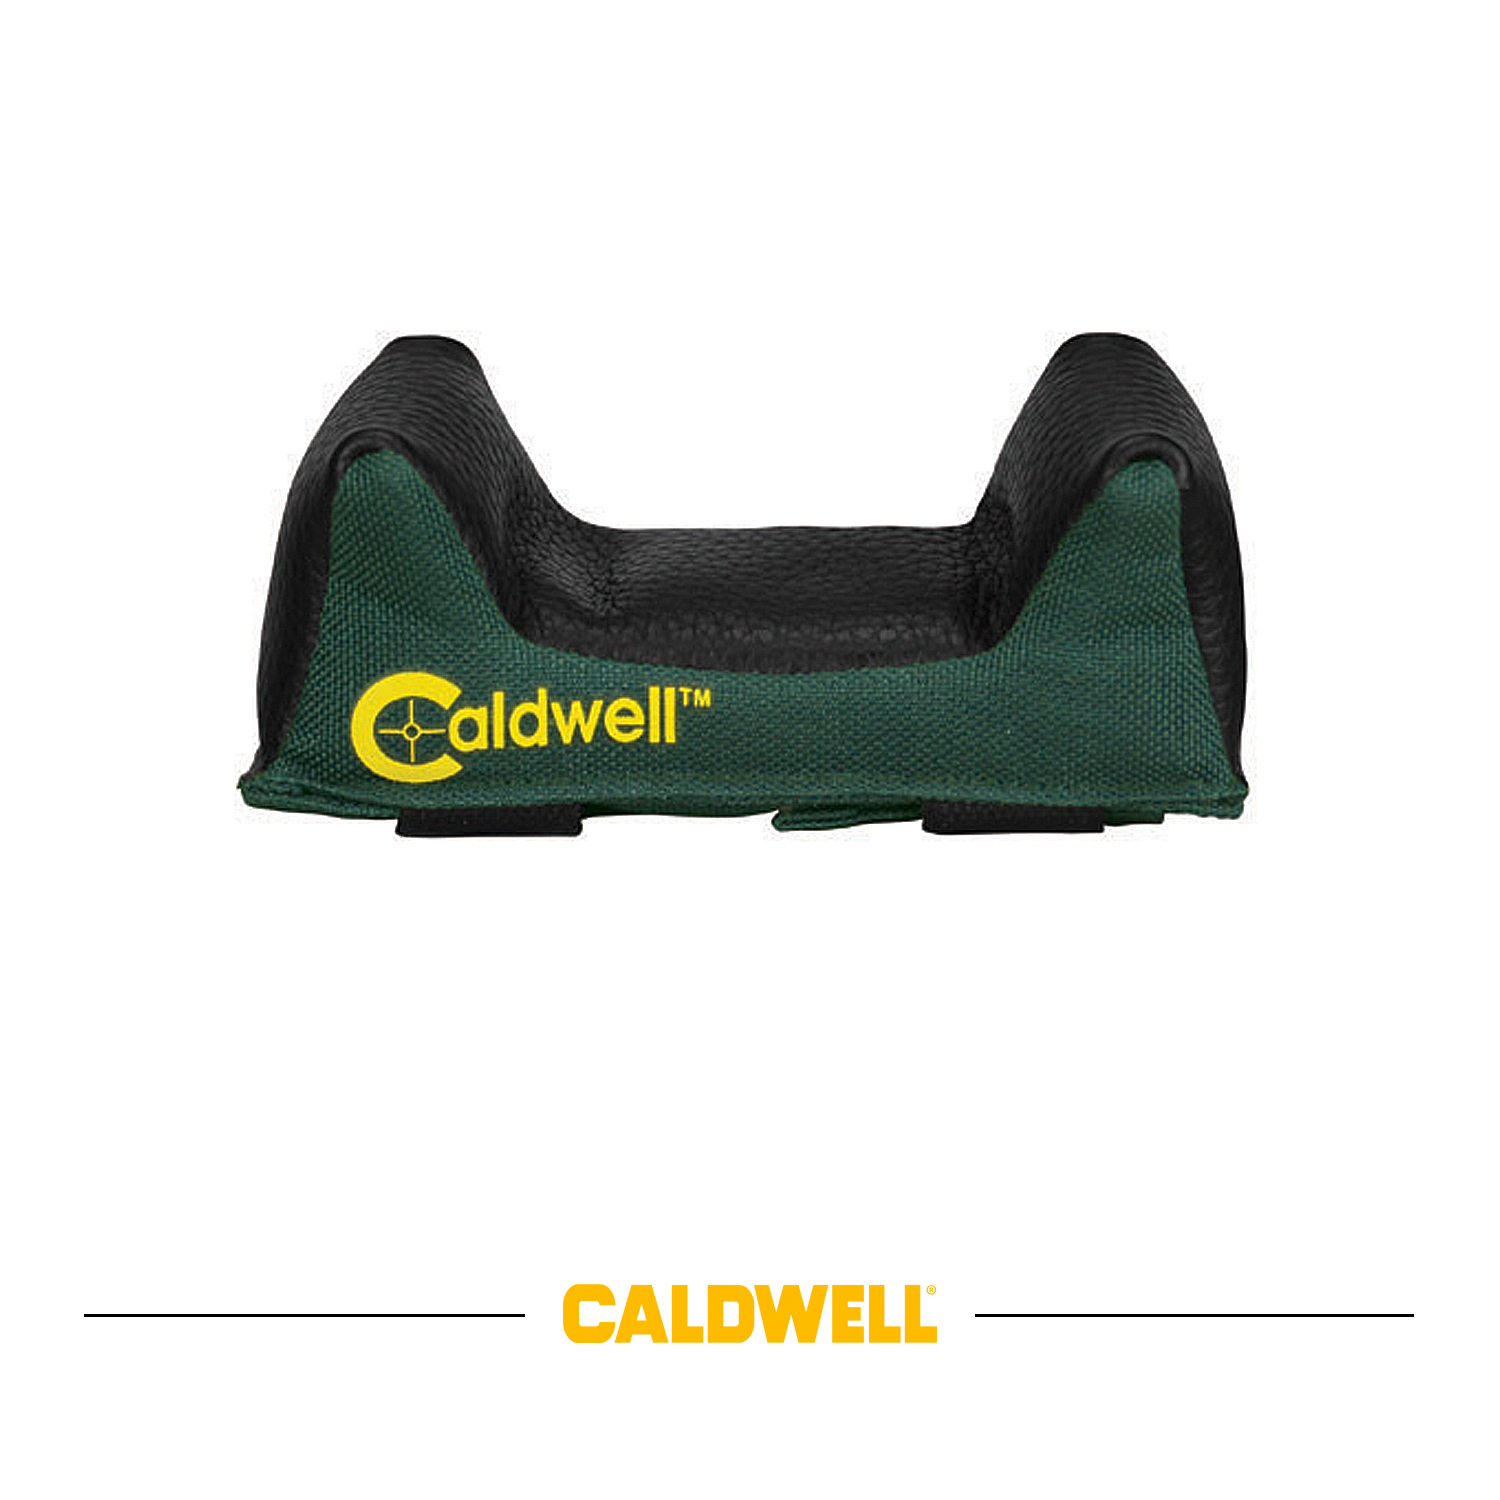 Caldwell sacchetto appoggio anteriore larghezza da 70 a 83mm